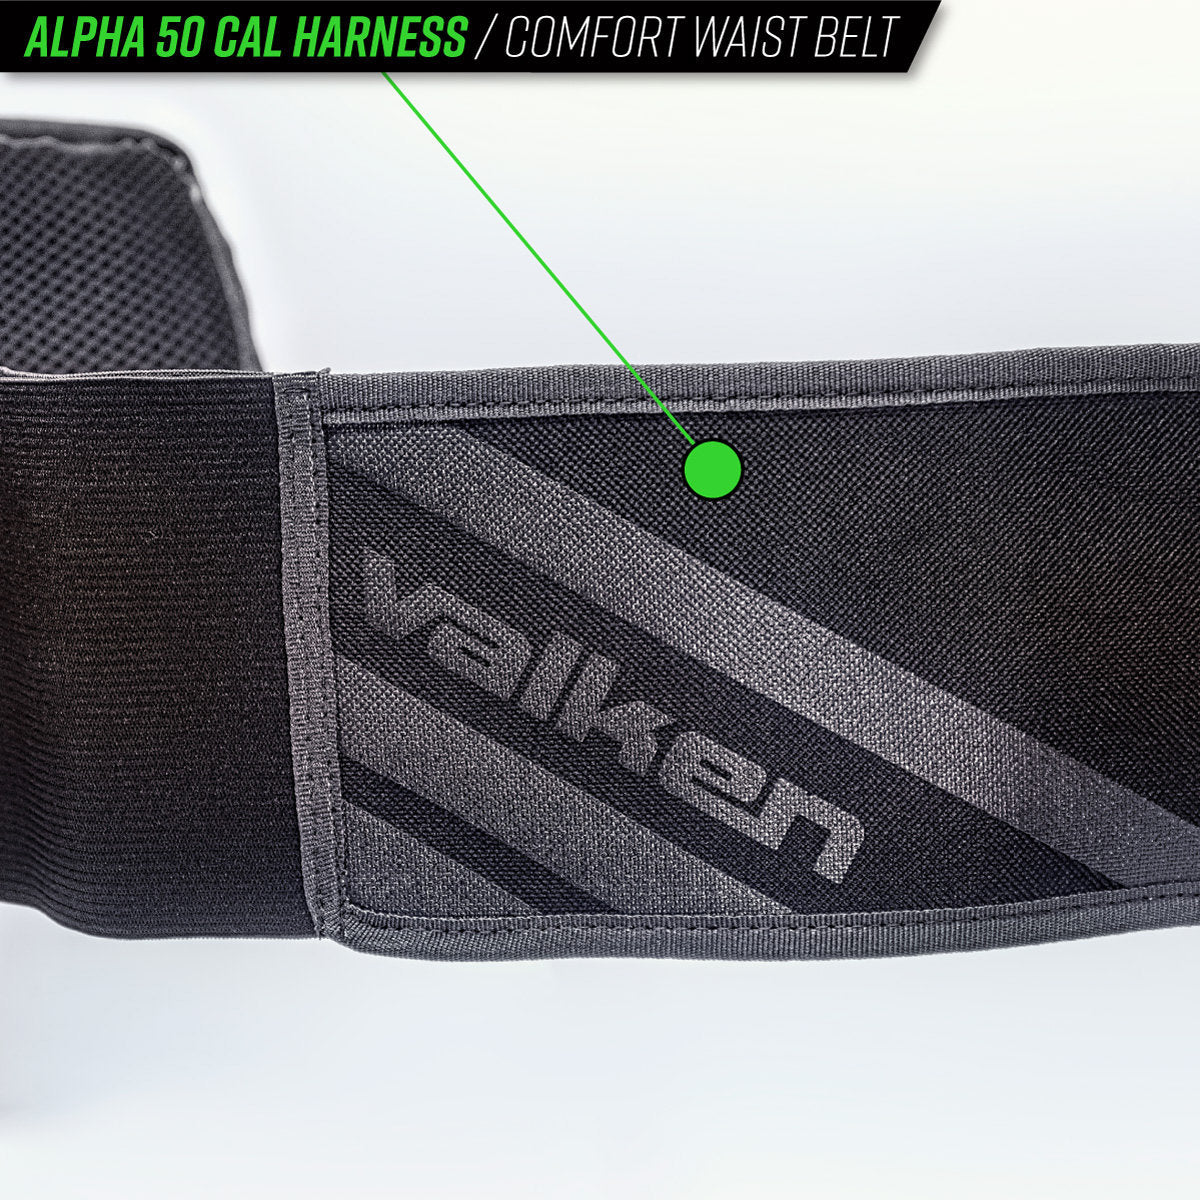 Valken Alpha 5-Pod 50 Caliber Paintball Harness | Paintball Pod Harness | Valken | Black/Grey